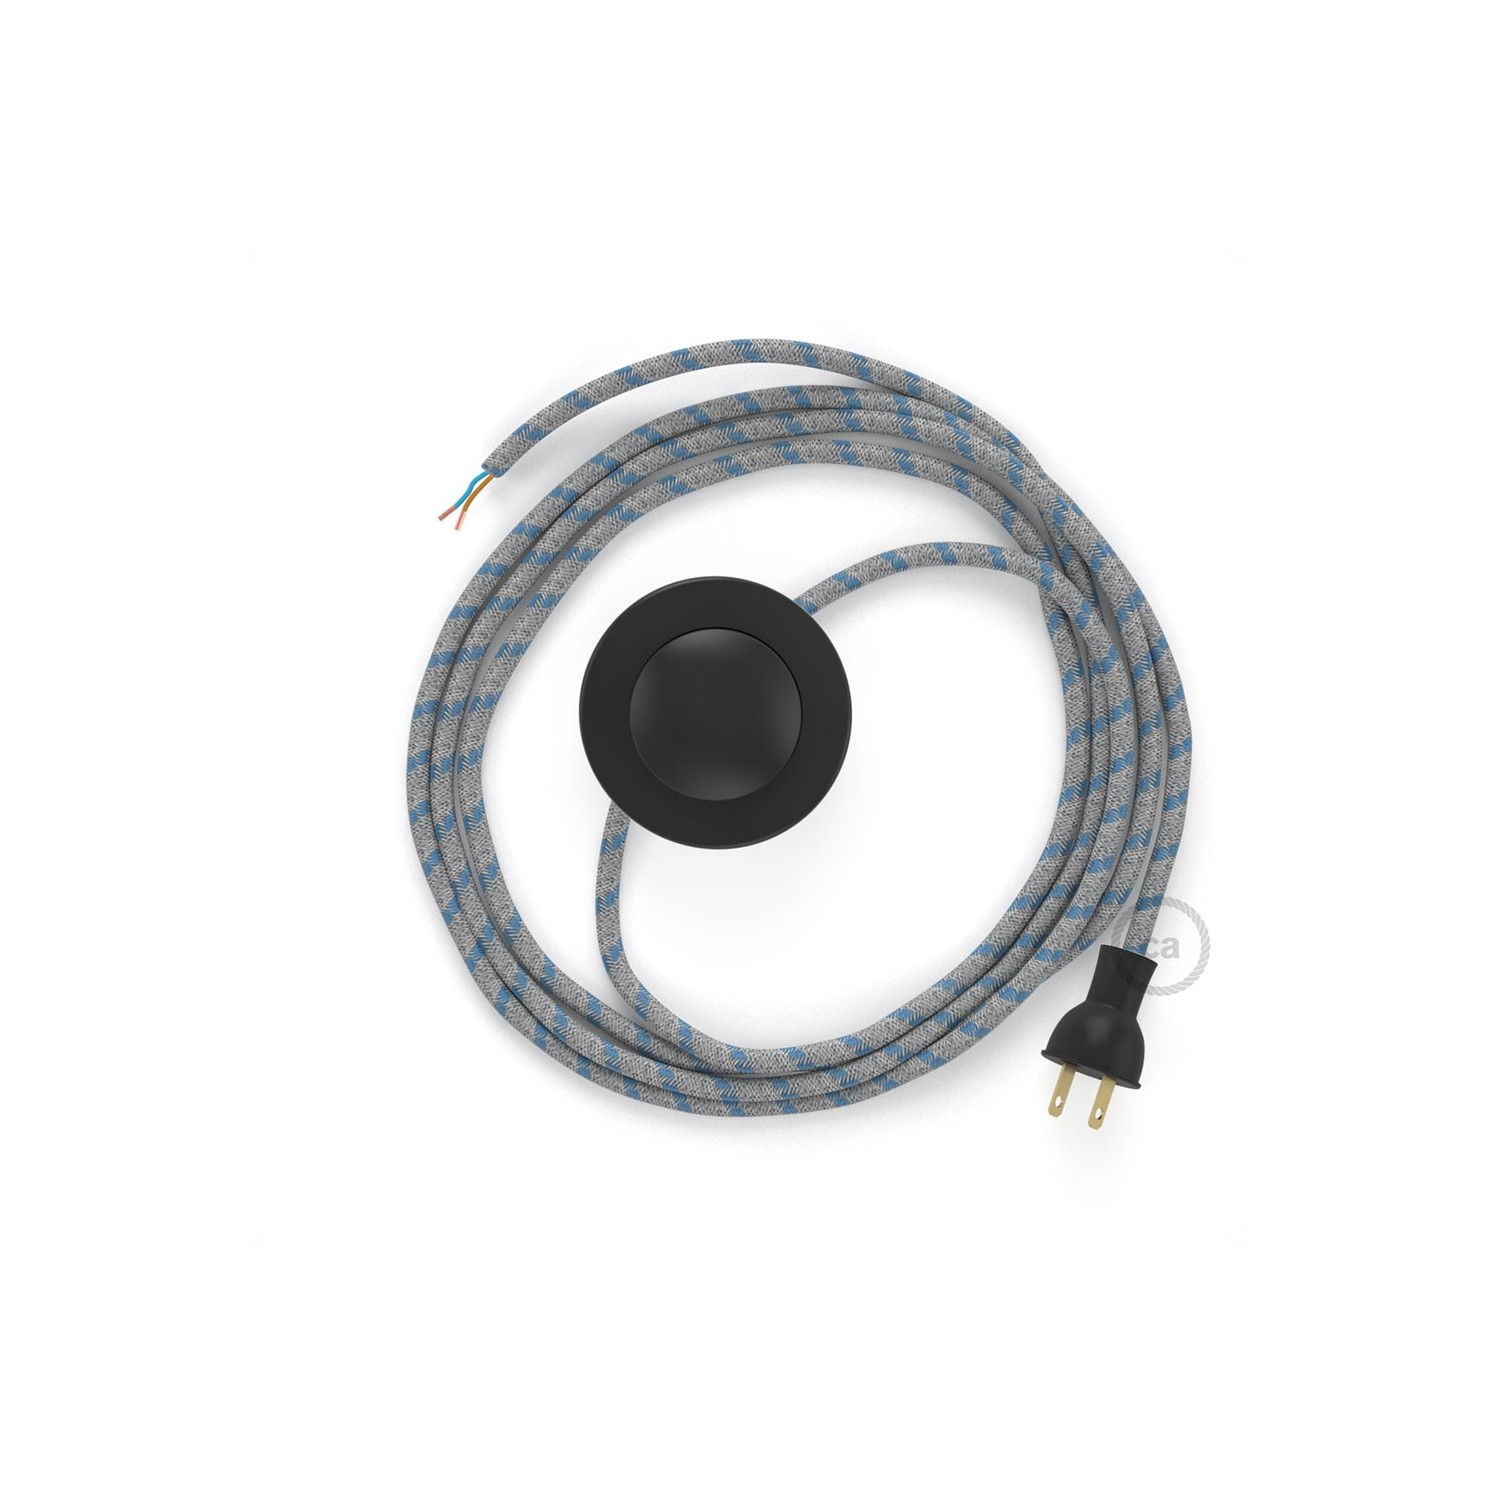 Cableado para lámpara de piso, cable RD55 Rayas Azul Steward 3 m. Elige tu el color de la clavija y del interruptor!